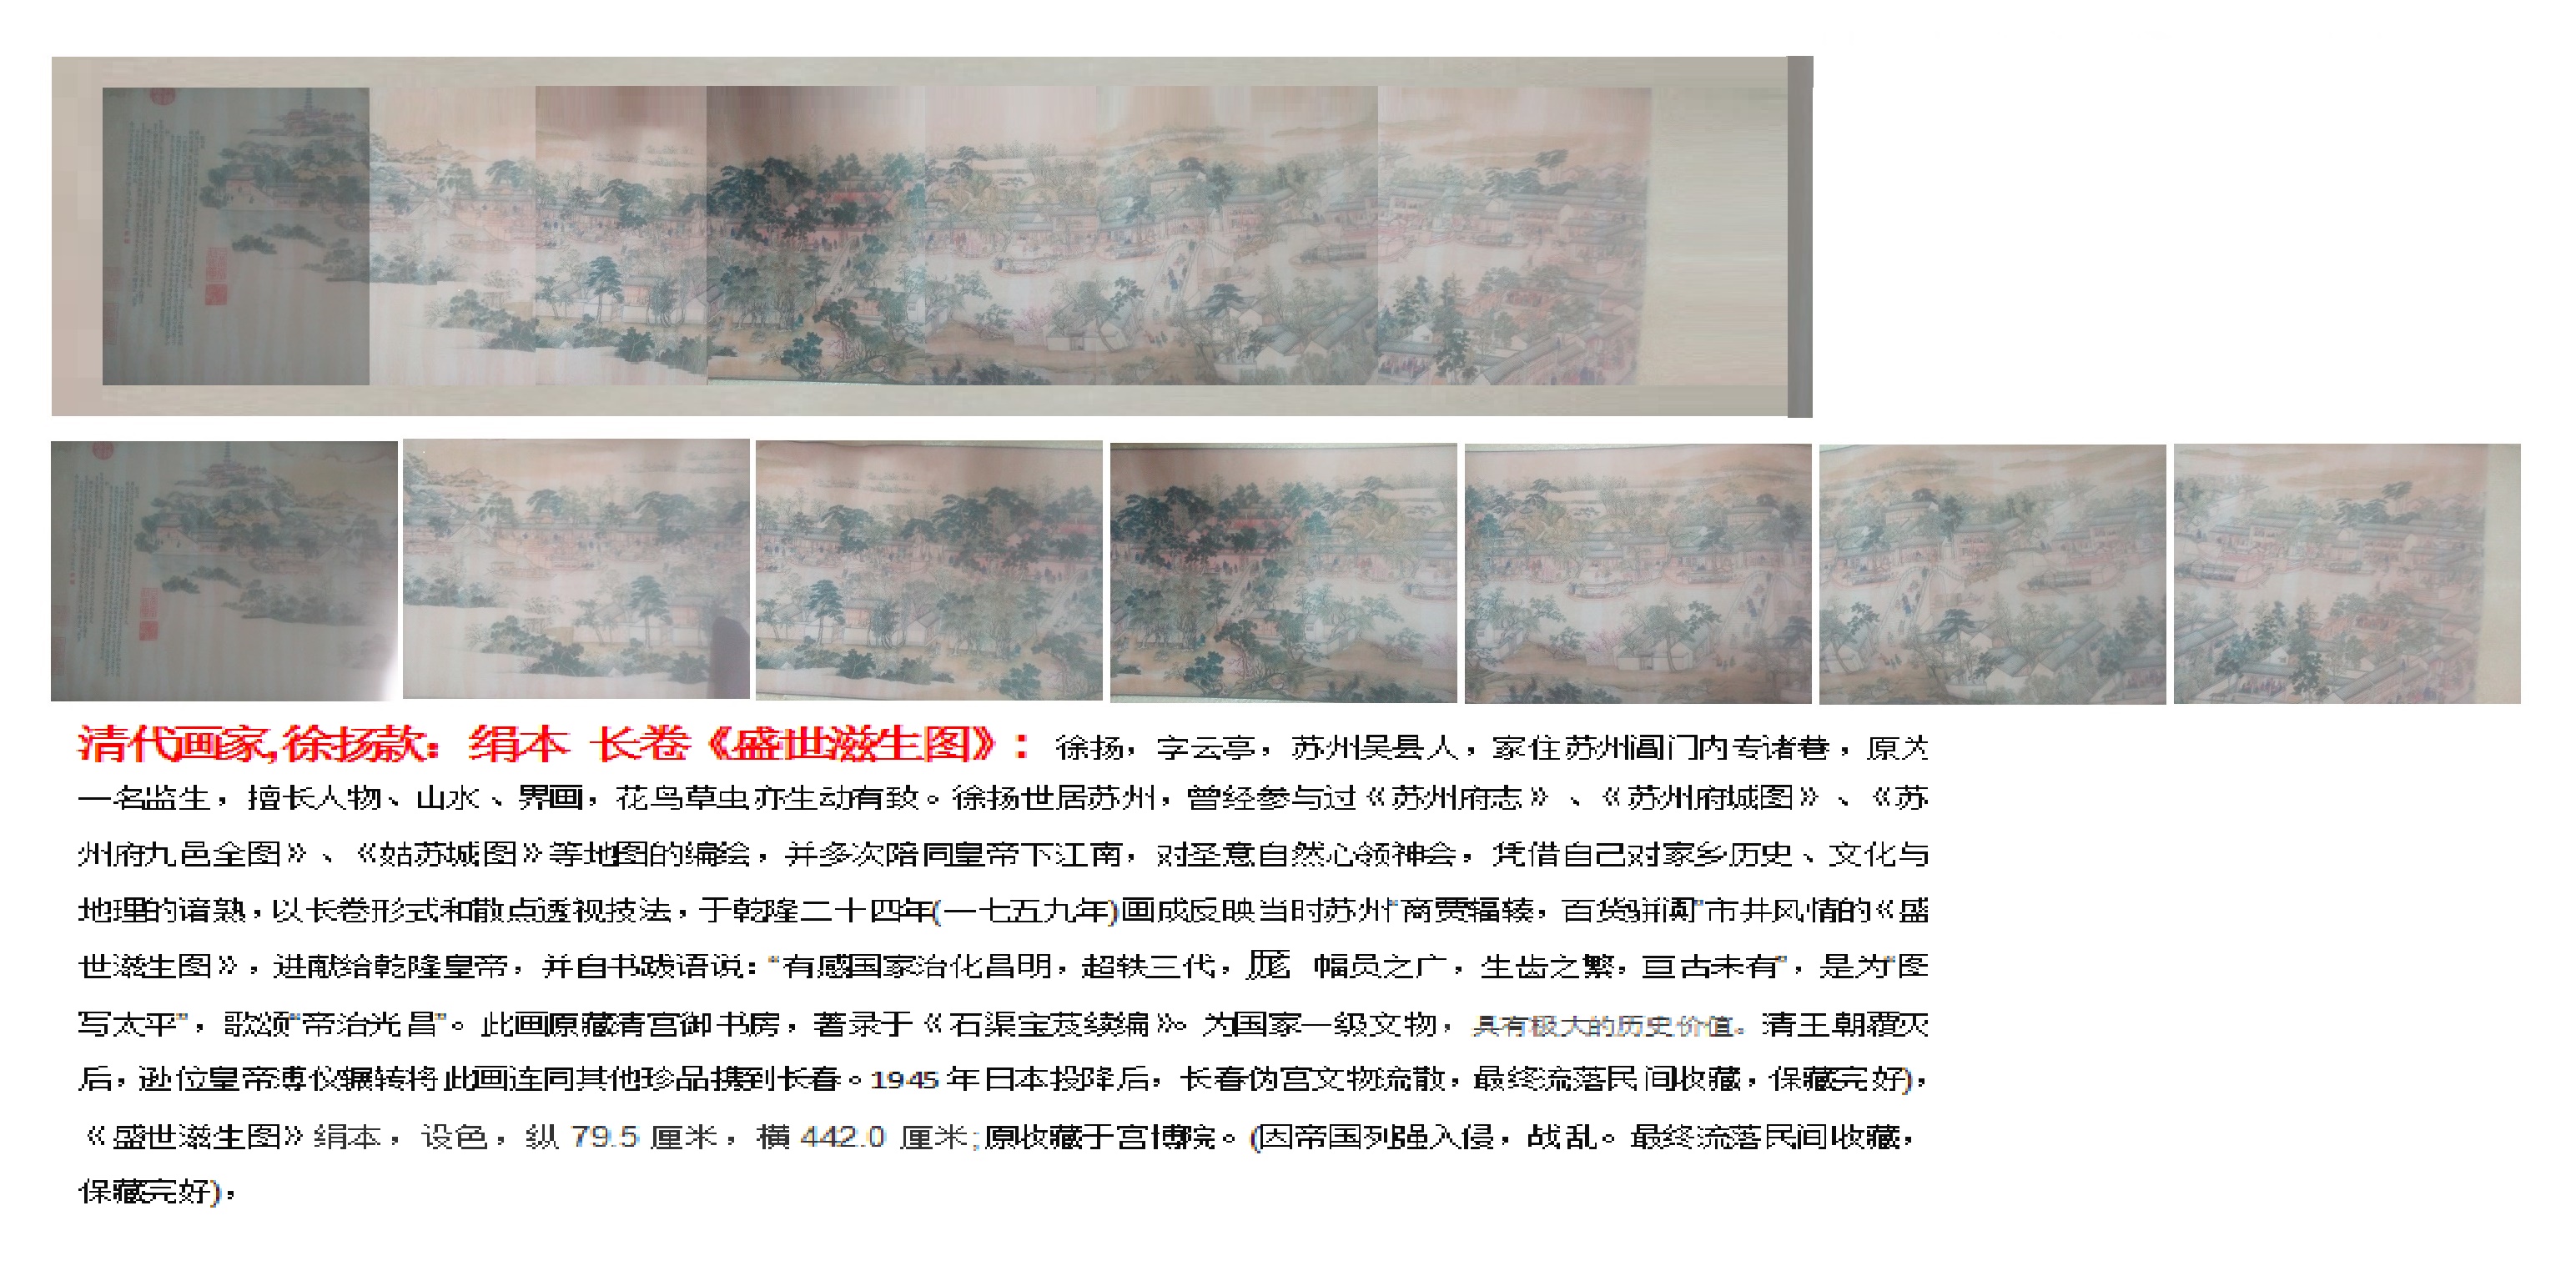 清代画家,徐扬款:绢本 长卷《盛世滋生图》